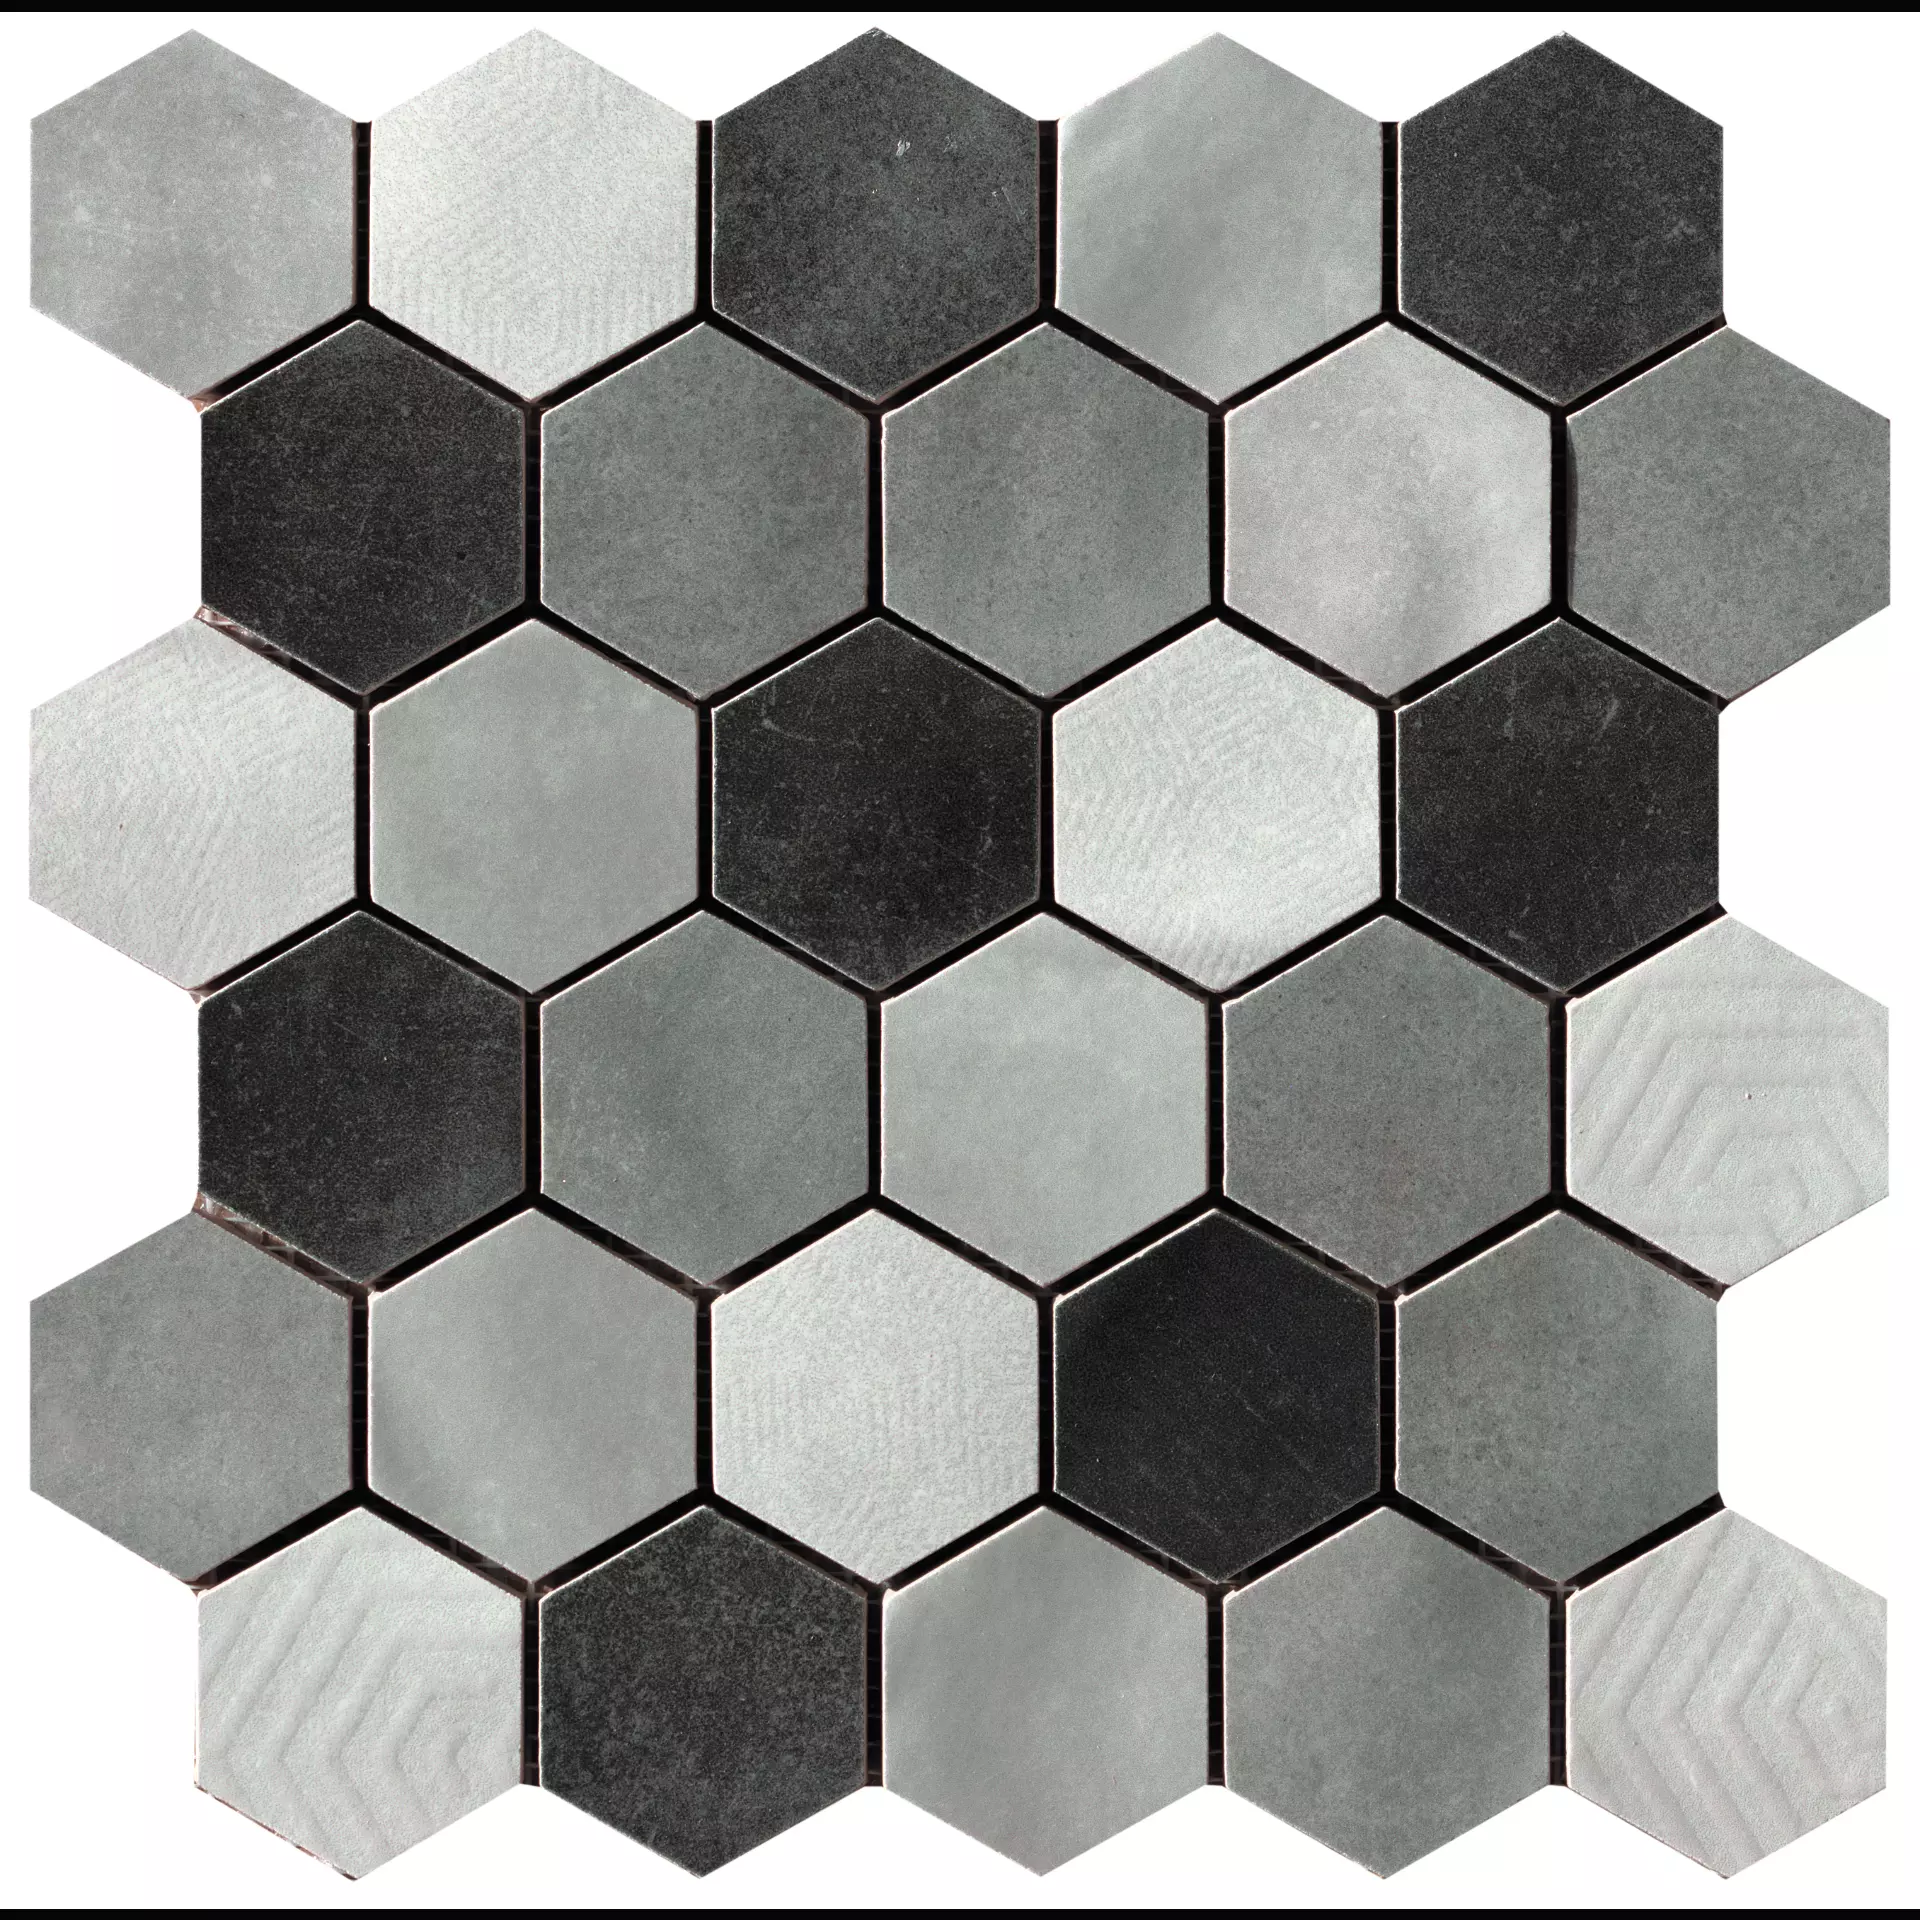 CIR Materia Prima Grey Naturale Mosaik Hexagon Mix 1069921 27x27cm